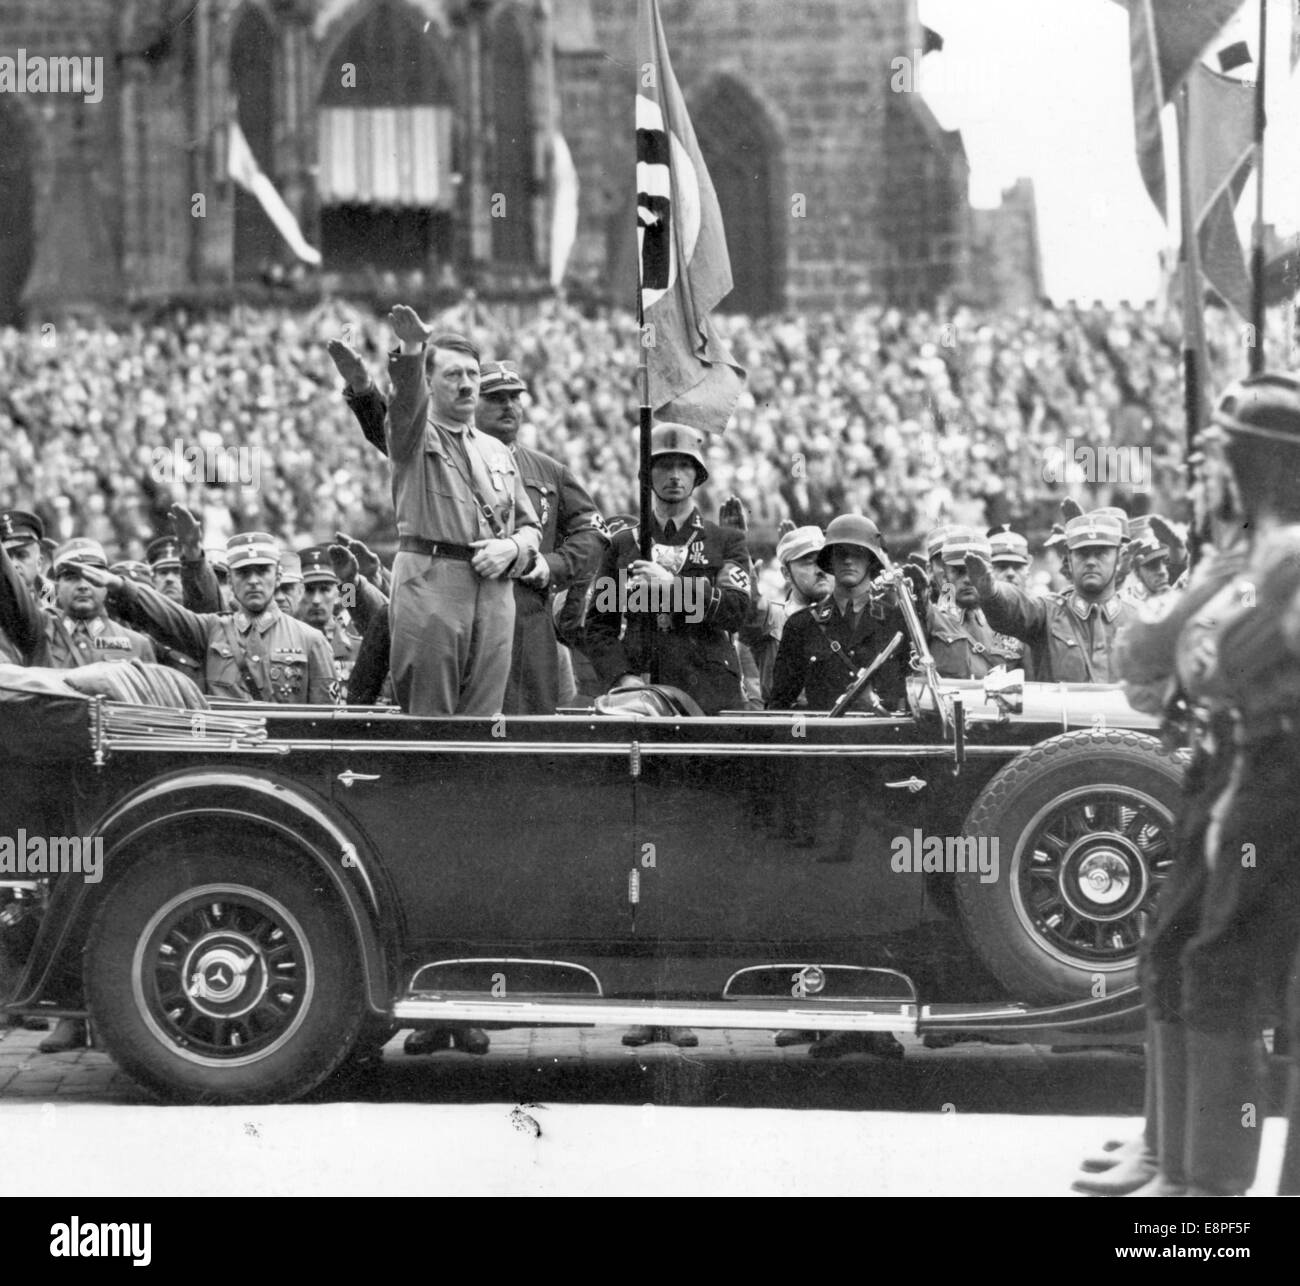 Rallye de Nuremberg 1933 à Nuremberg, Allemagne - Adolf Hitler passe en revue un défilé de la sa (Sturmabteilung). (Défauts de qualité dus à la copie historique de l'image) Fotoarchiv für Zeitgeschichtee - PAS DE SERVICE DE FIL - Banque D'Images